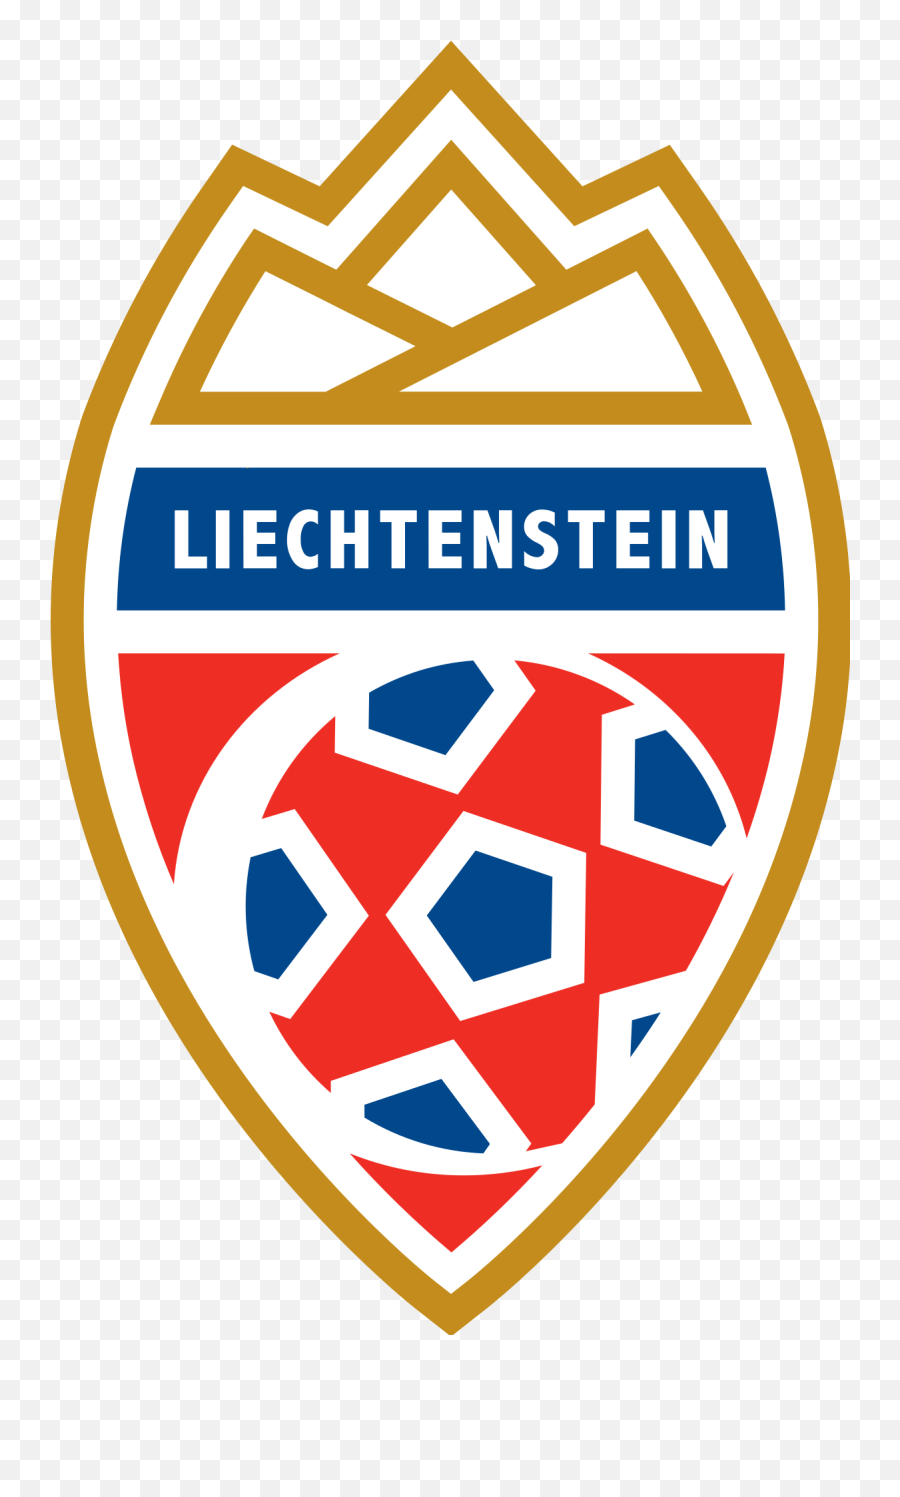 Liechtenstein Football Association - Wikipedia Liechtenstein National Football Team Logo Emoji,Football Logo